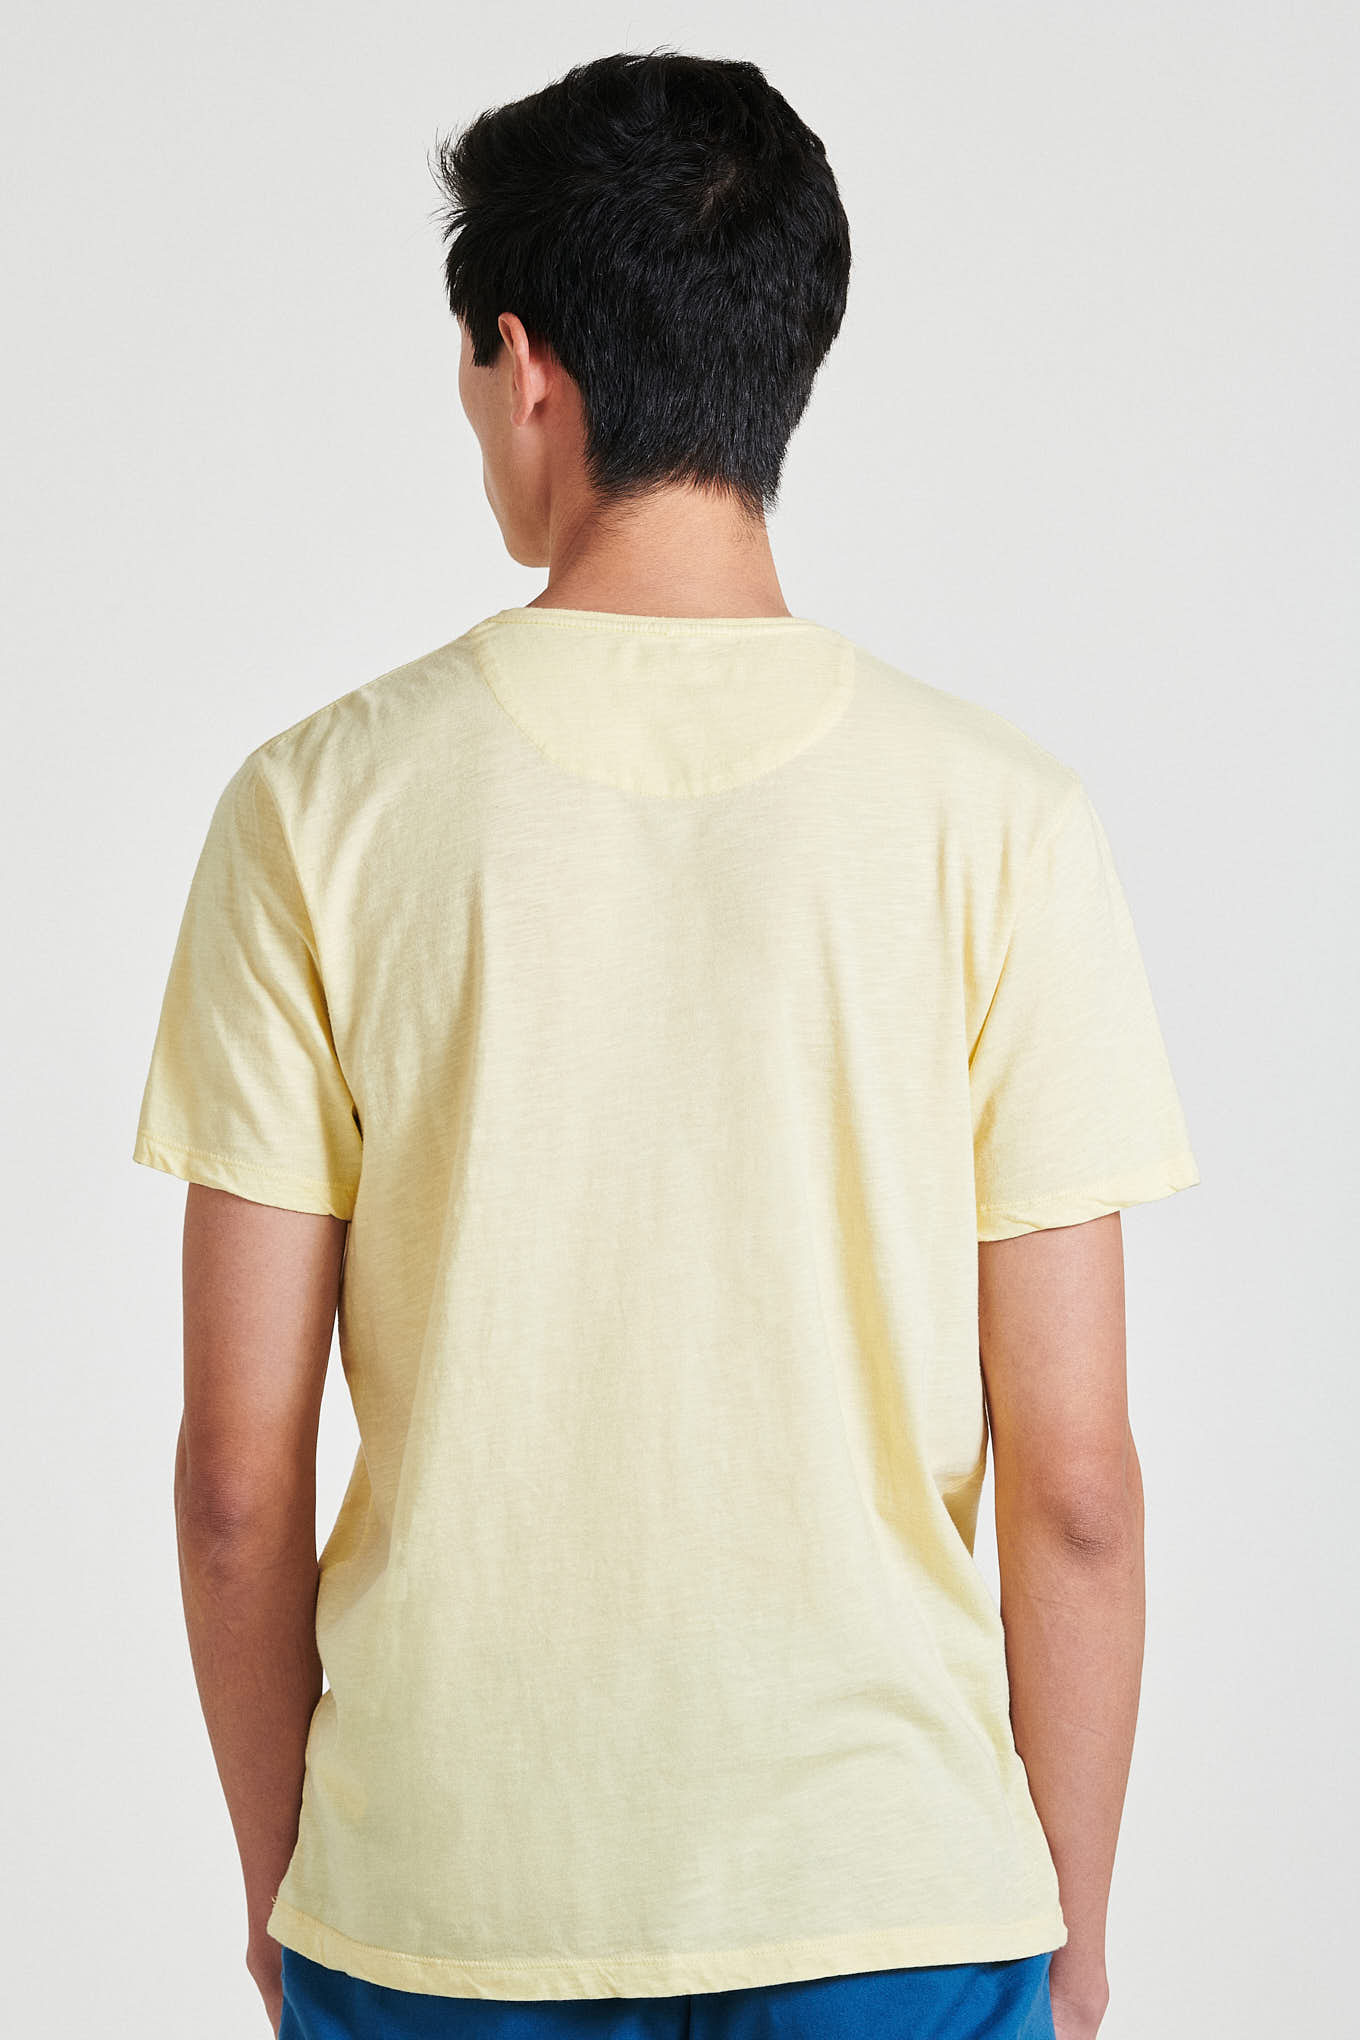 T-Shirt Amarelo Claro Sport Homem